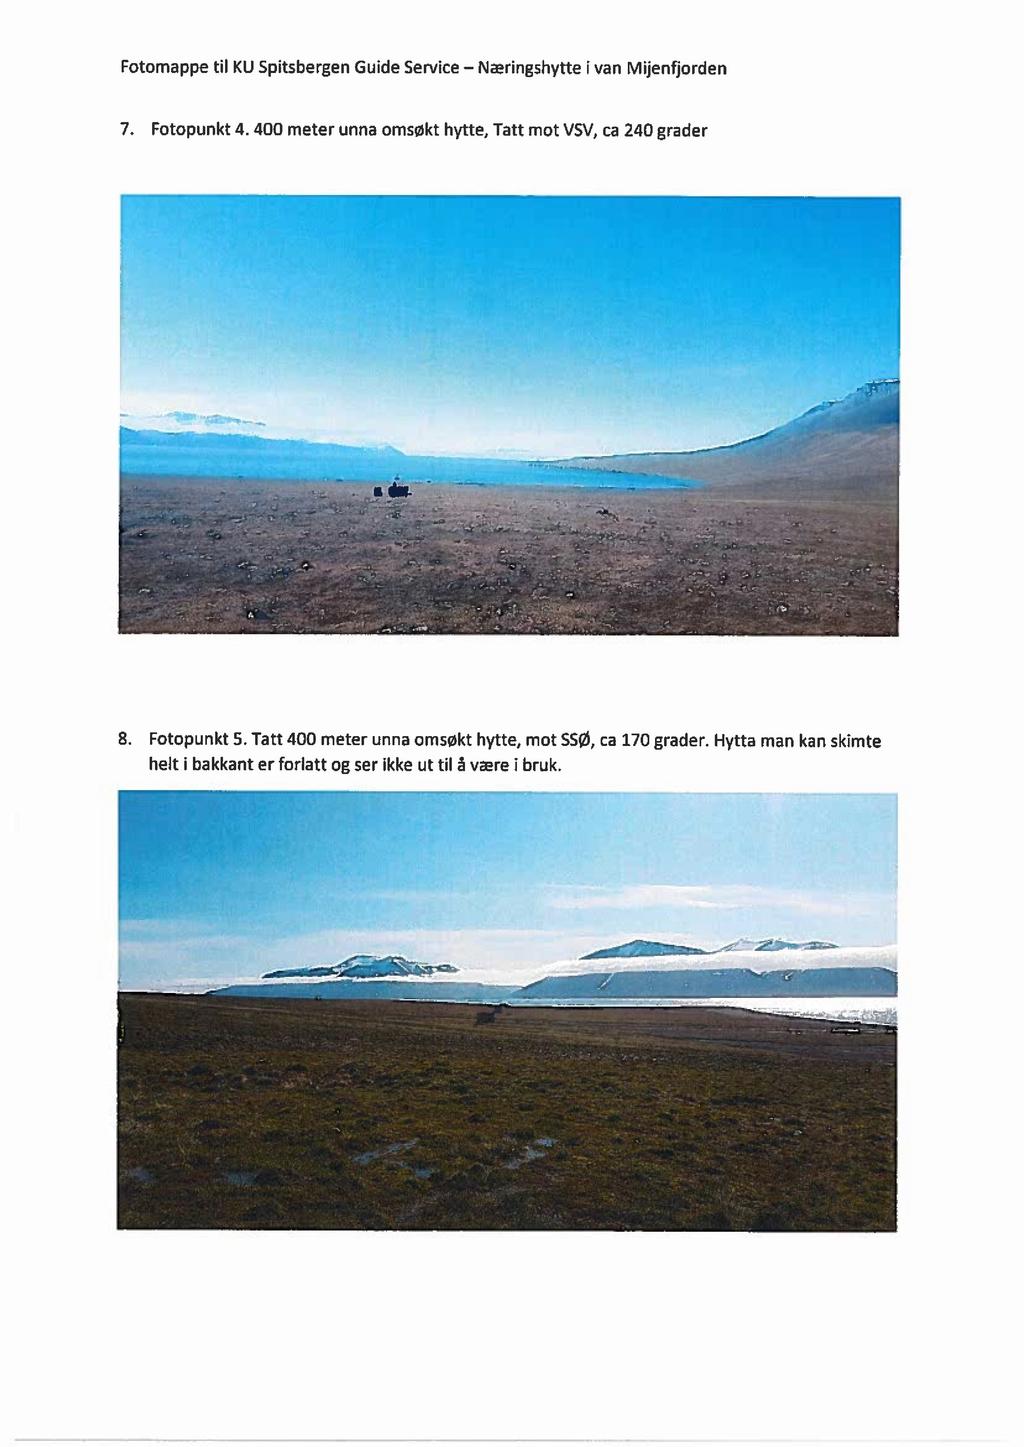 Fotomappe til KU Spitsbergen Guide Service - Næringshytte i van Mijenfiorden 7. Fotopunkt 4. 400 meter unna omsøkt hytte, Tatt mot VSV, ca 240 grader g: ytt '..ad..i *.1, '_ 1? _ ' "1. l - ; --"-.L.